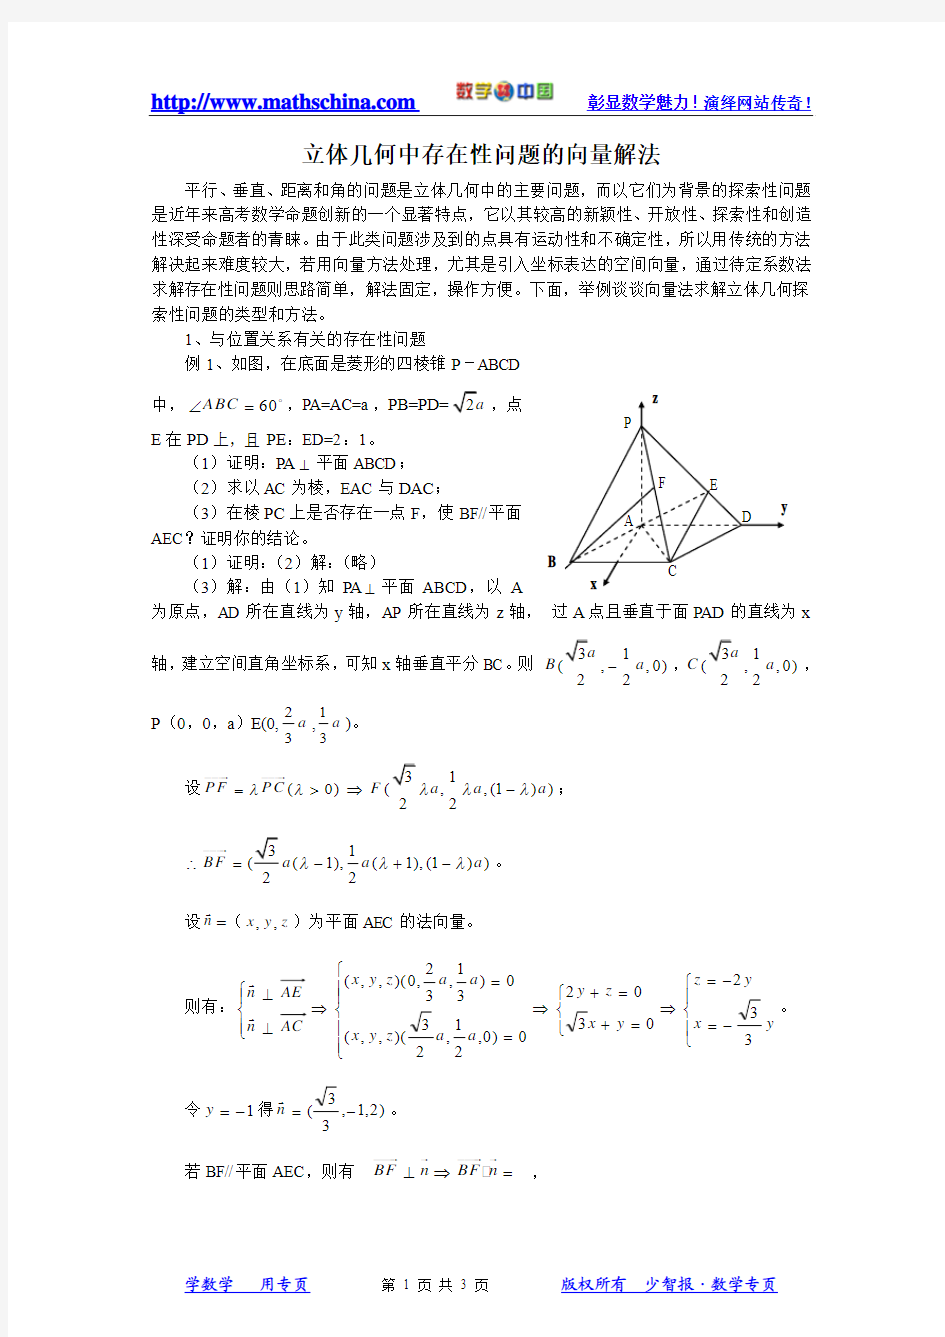 (文章)立体几何中存在性问题的向量解法 2